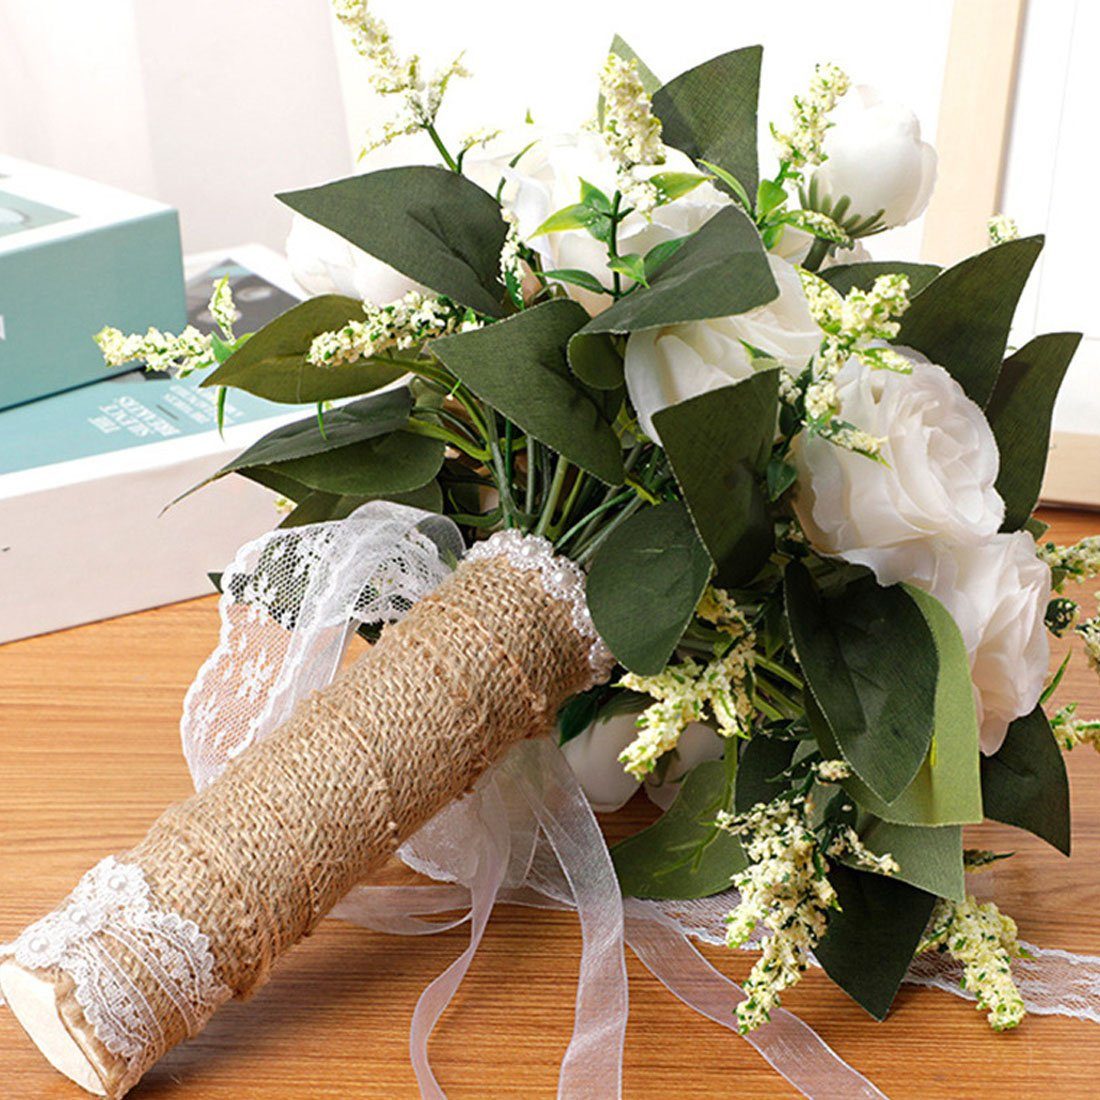 Kunstblumenstrauß Braut DÖRÖY Bouquet Blume Hochzeit Weiß Hand Requisiten, Simulation Simulation